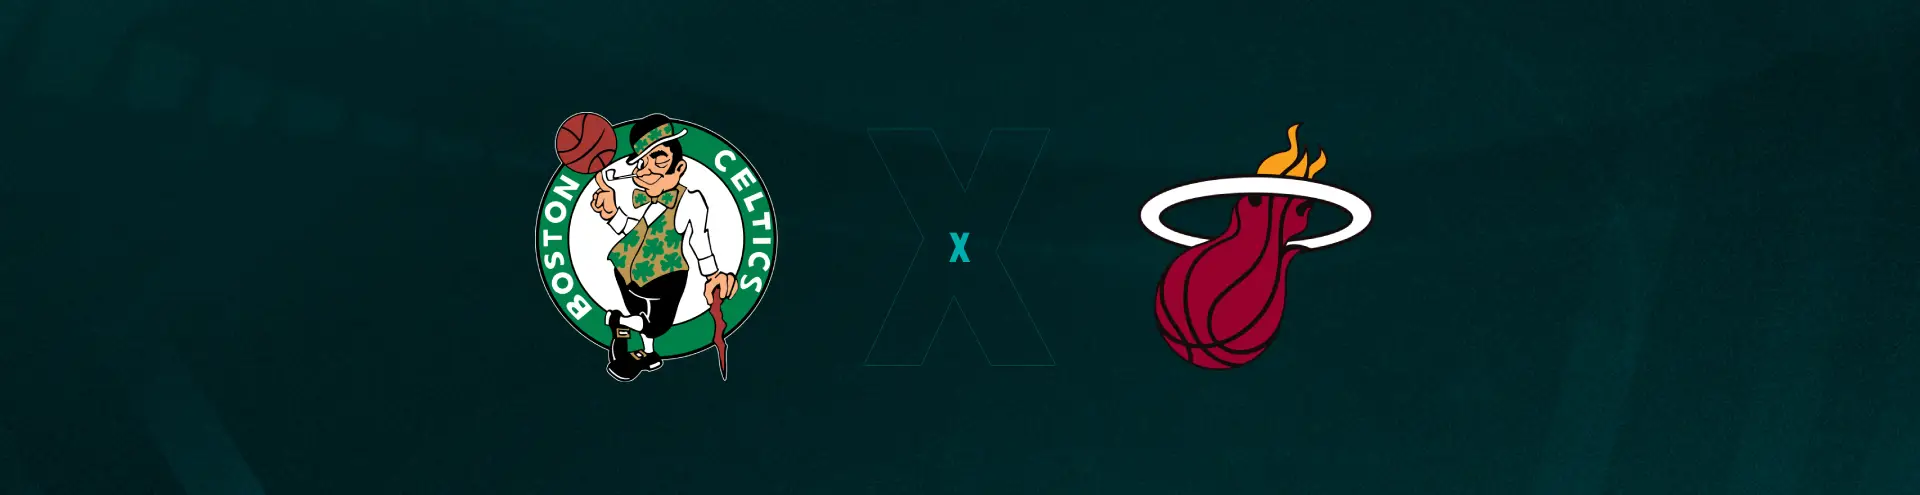 Heat x Celtics ao vivo na NBA: onde assistir ao Jogo 5 hoje e